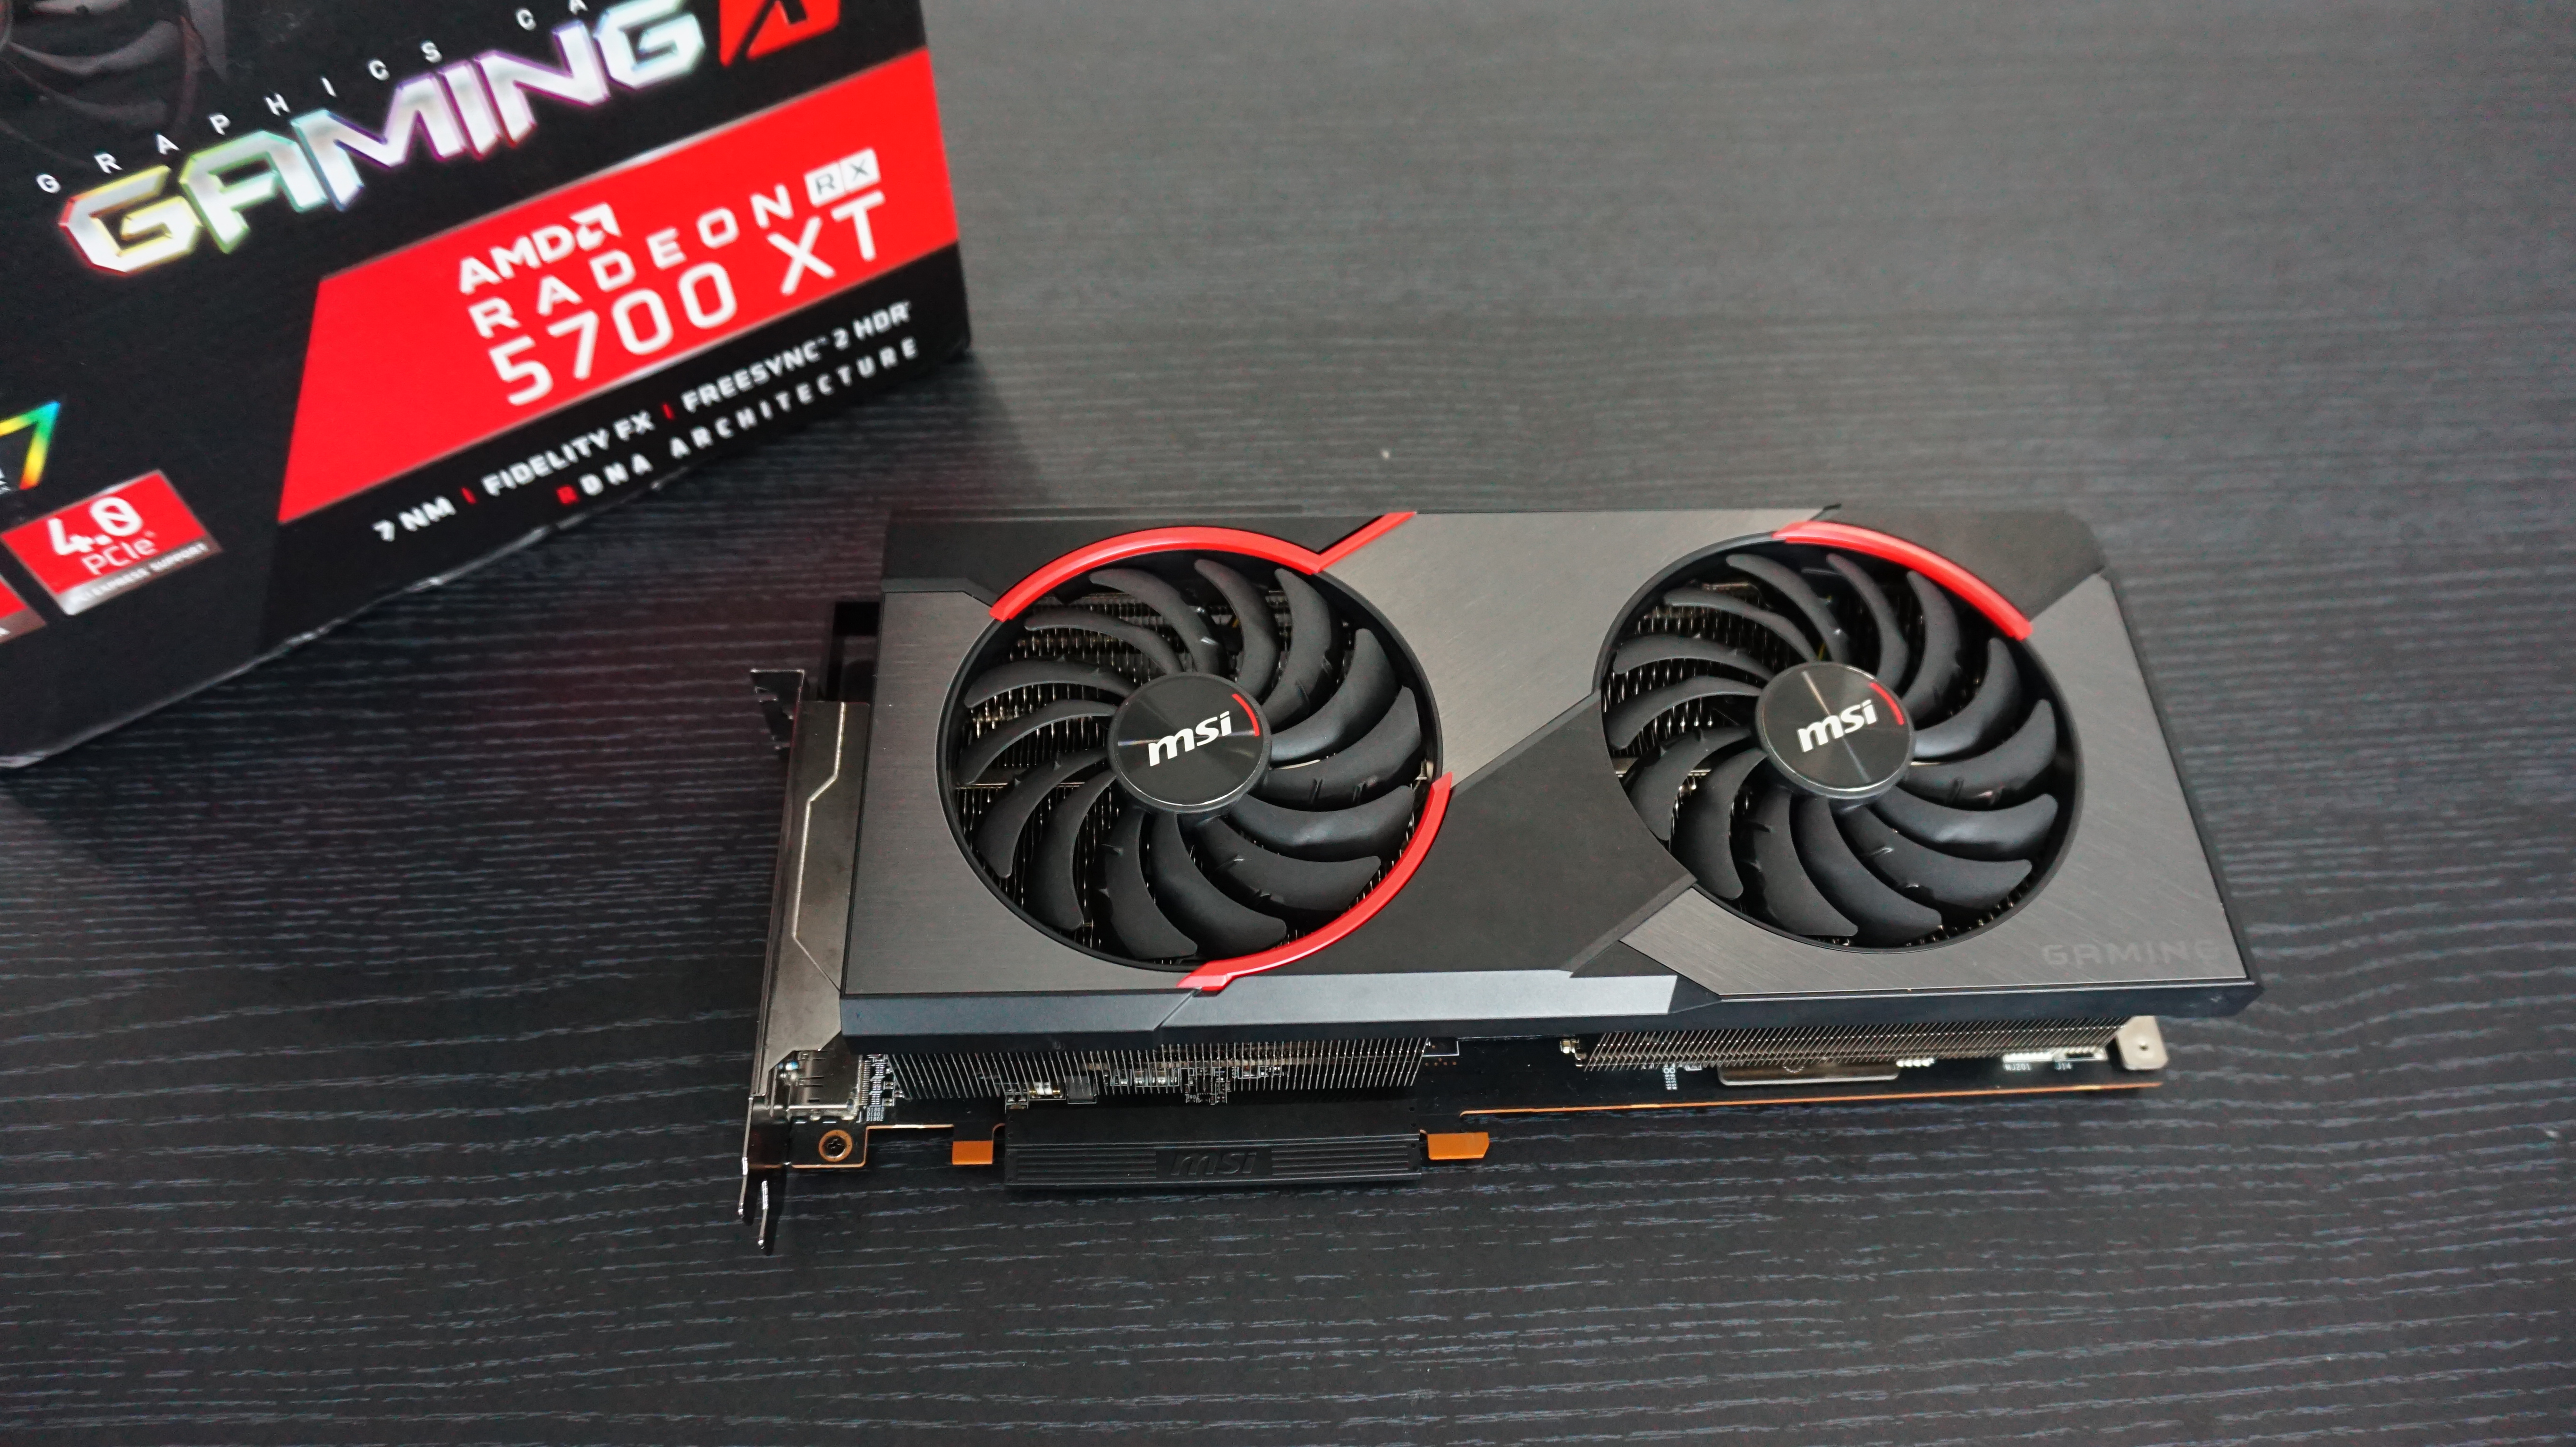 MSI AMD Radeon RX 5700 XT: Hiệu năng đầy kinh ngạc với mức giá hấp dẫn vô cùng - Ảnh 8.